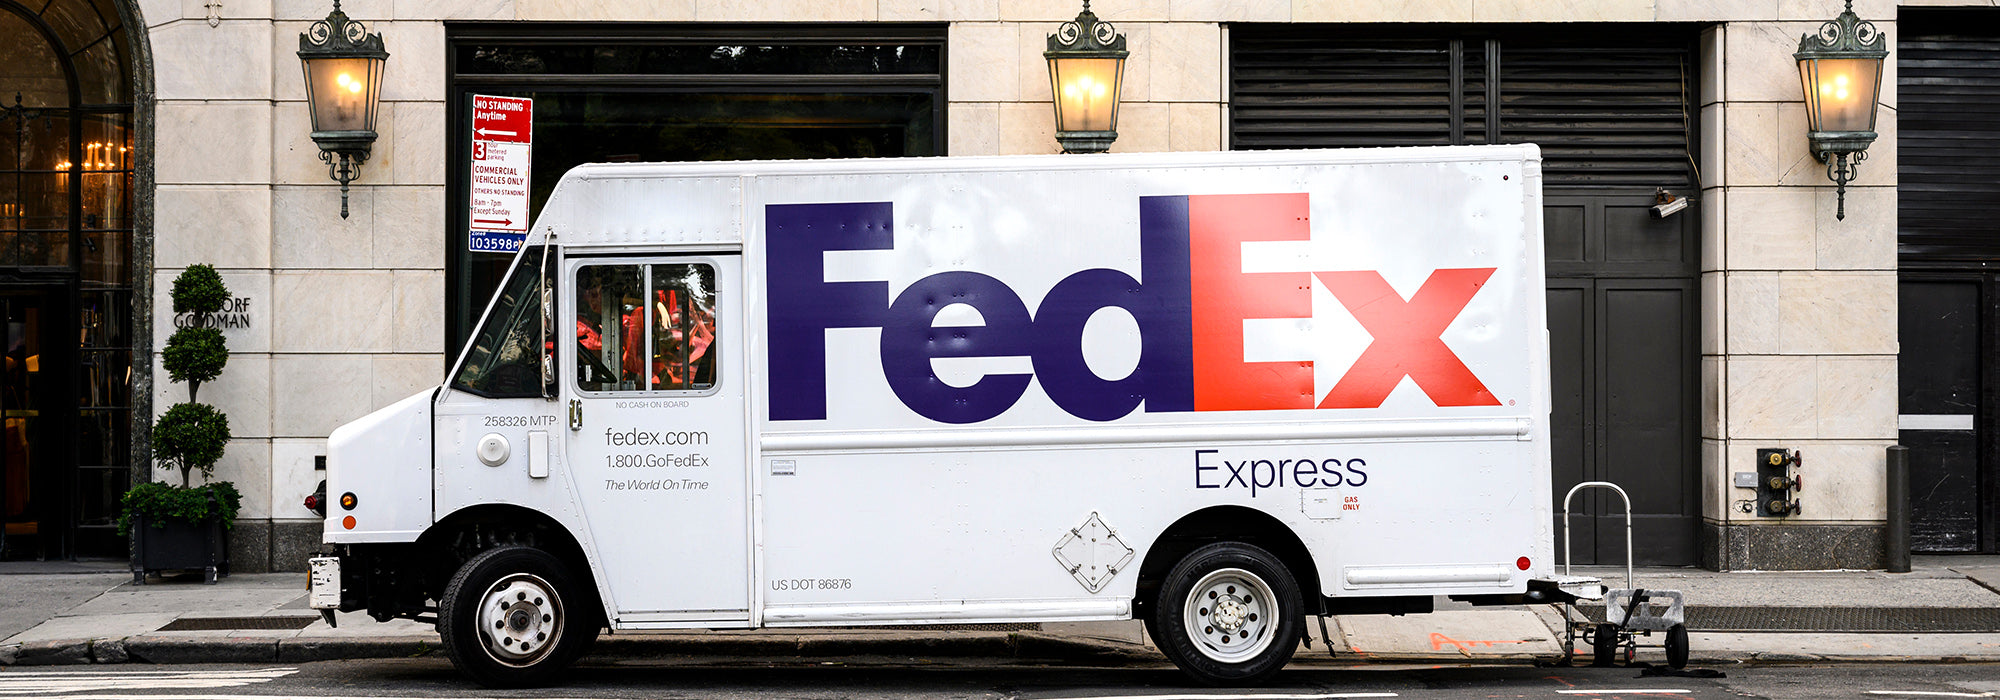 fedex truck delivering